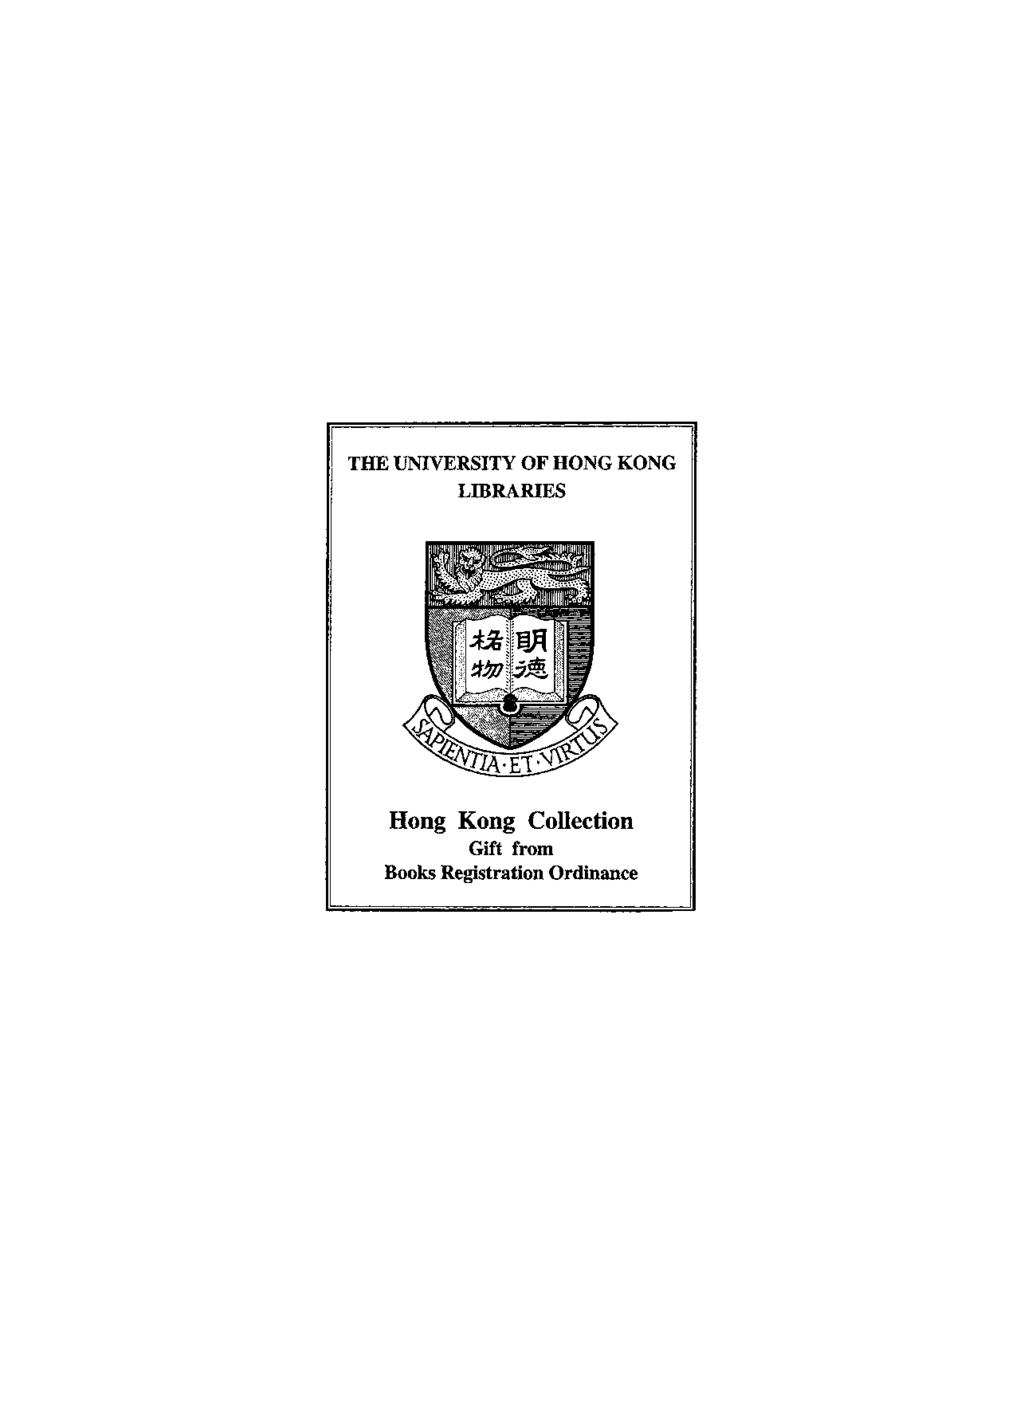 THE UNIVERSITY OF HONG KONG LIBRARIES Hong Kong